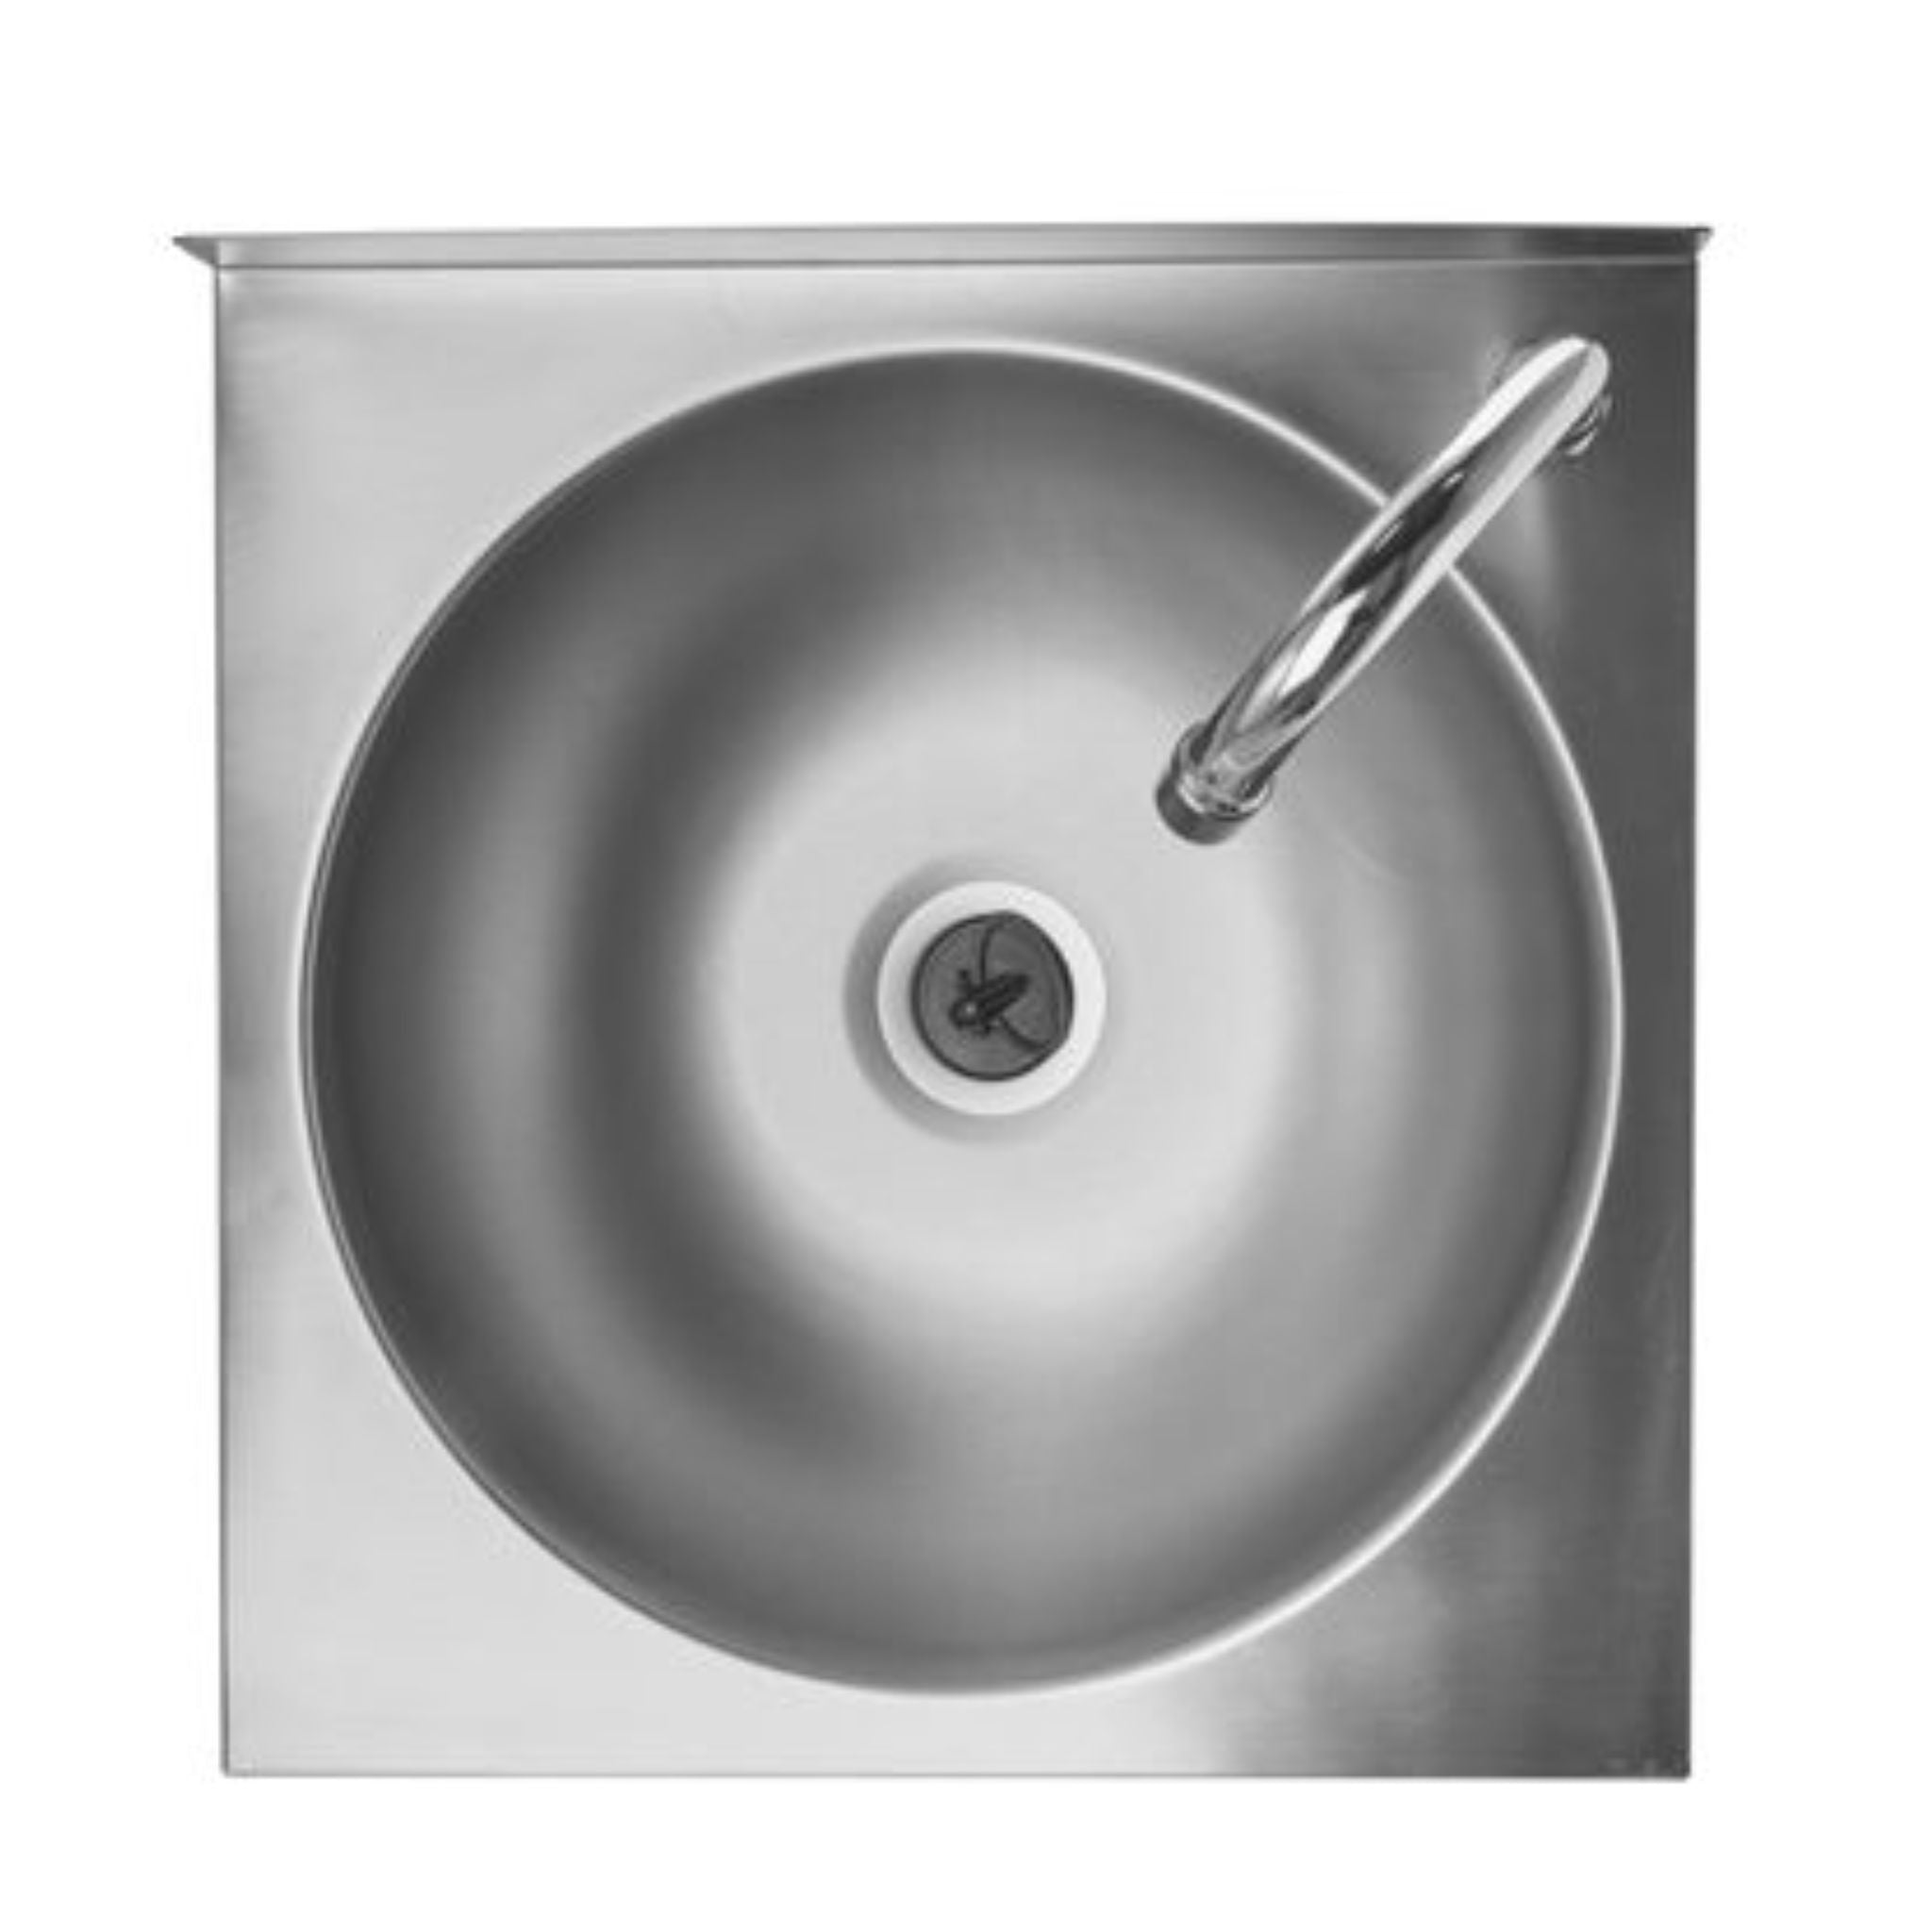 Edelstahl Handwaschbecken Standard